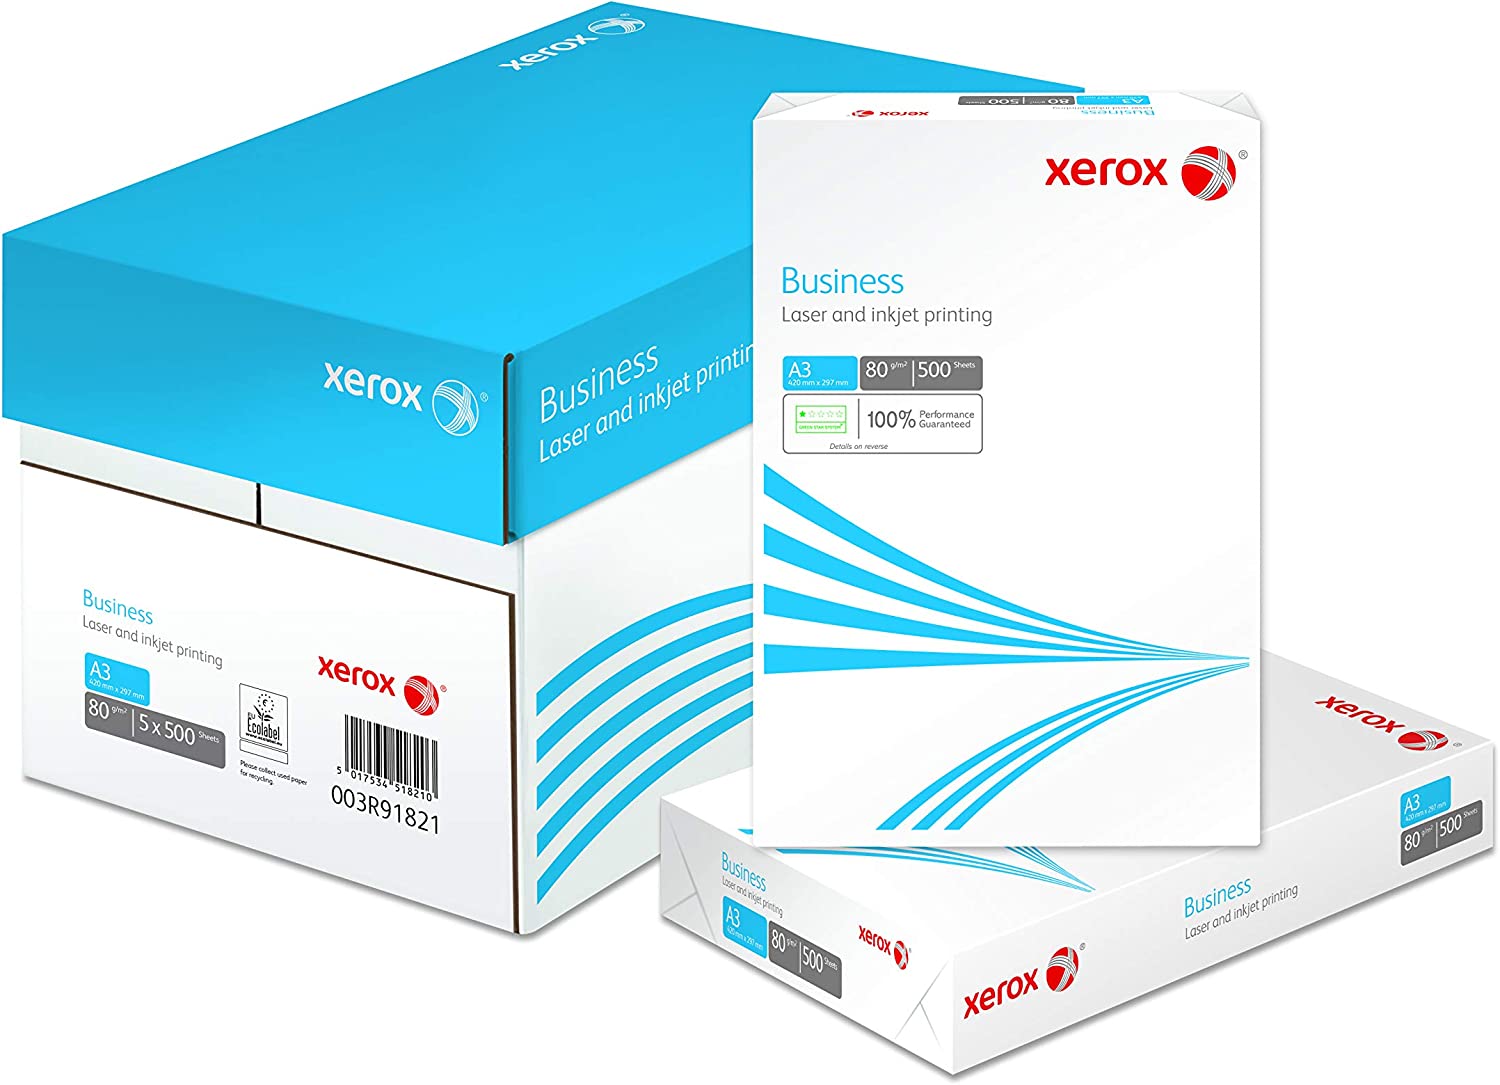 Xerox Business - Бумага для офиса класса B, A3, 80гр/м2, 500 листов,  5 пачек в коробке, непрозрачность 93%, белизна 164, толщина 106 мкм